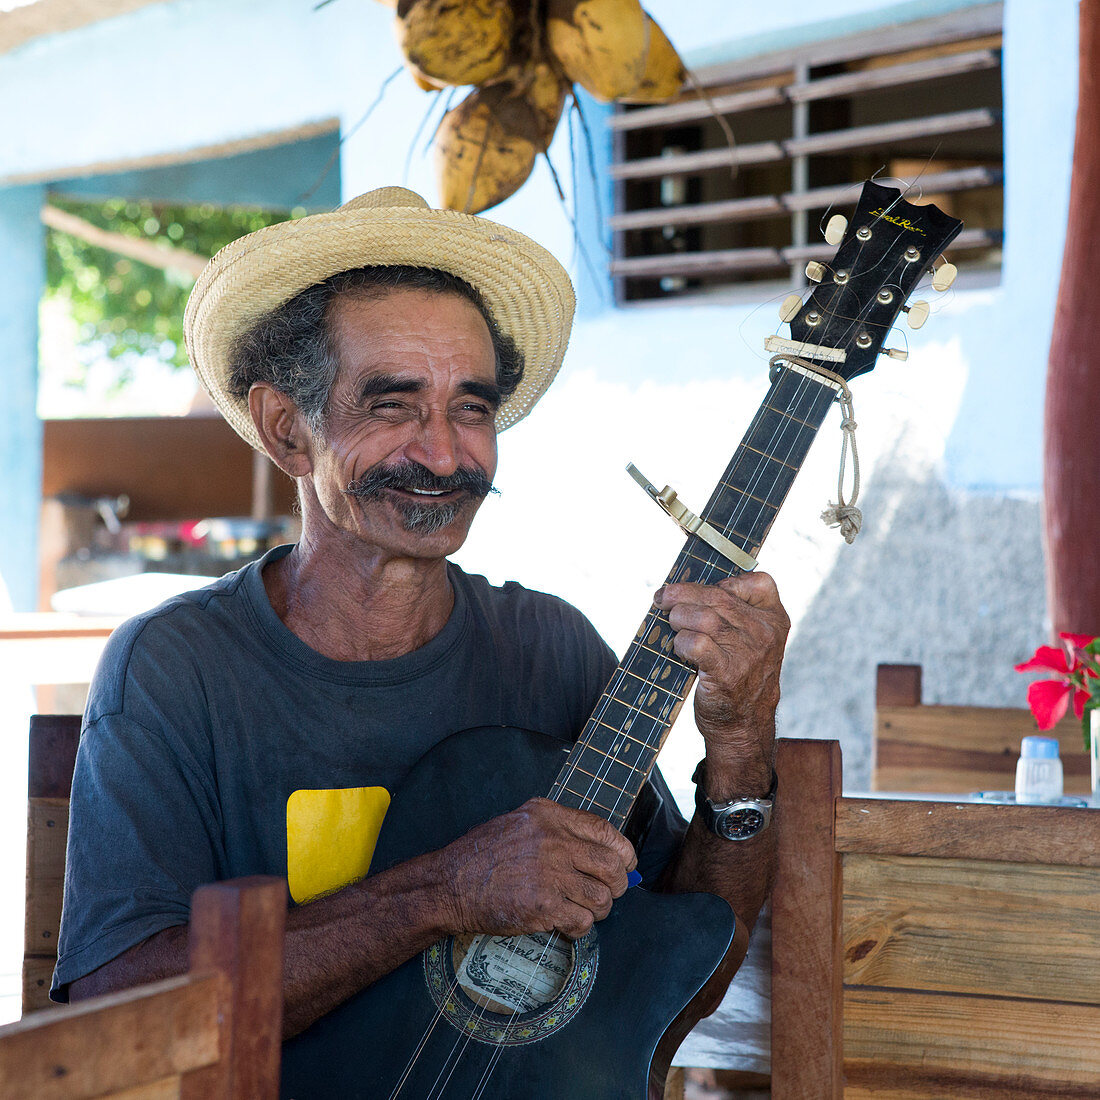 Kubanischer Mann mit Gitarre in einem Retsaurant in Trinidad, Kuba